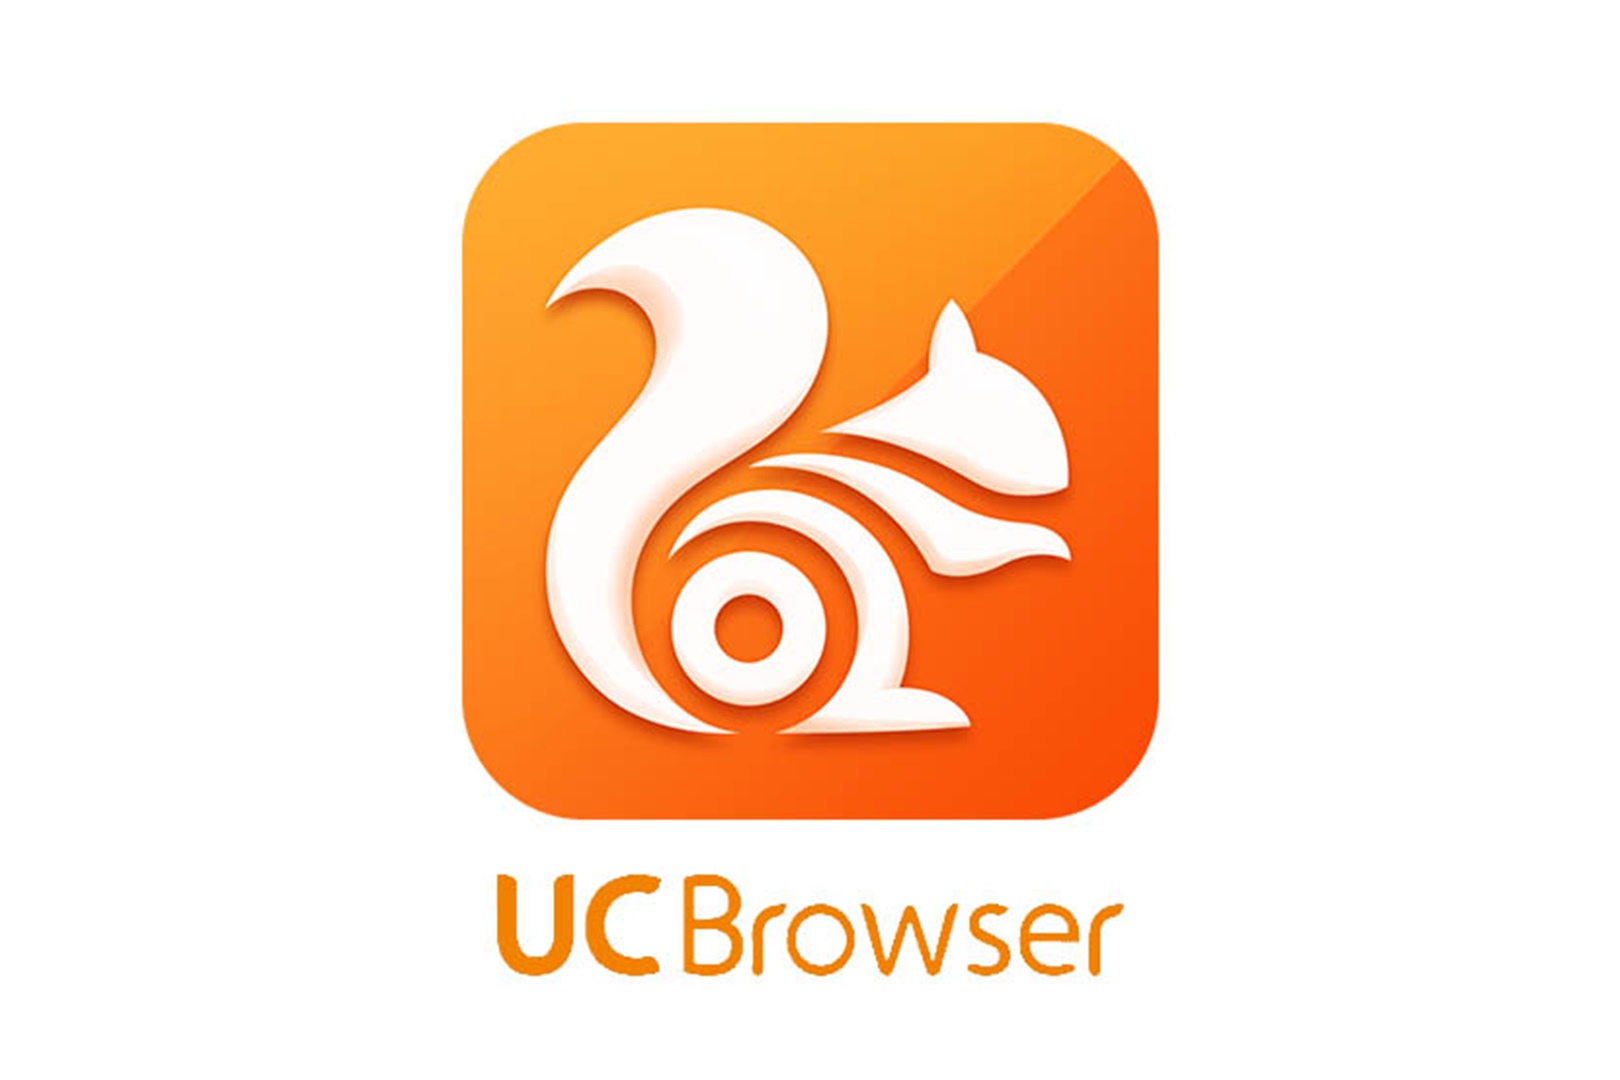 Seputar Aplikasi UC Turbo Browser Mod Apk : Pengertian, Keunggulan, dan Link Unduh-nya